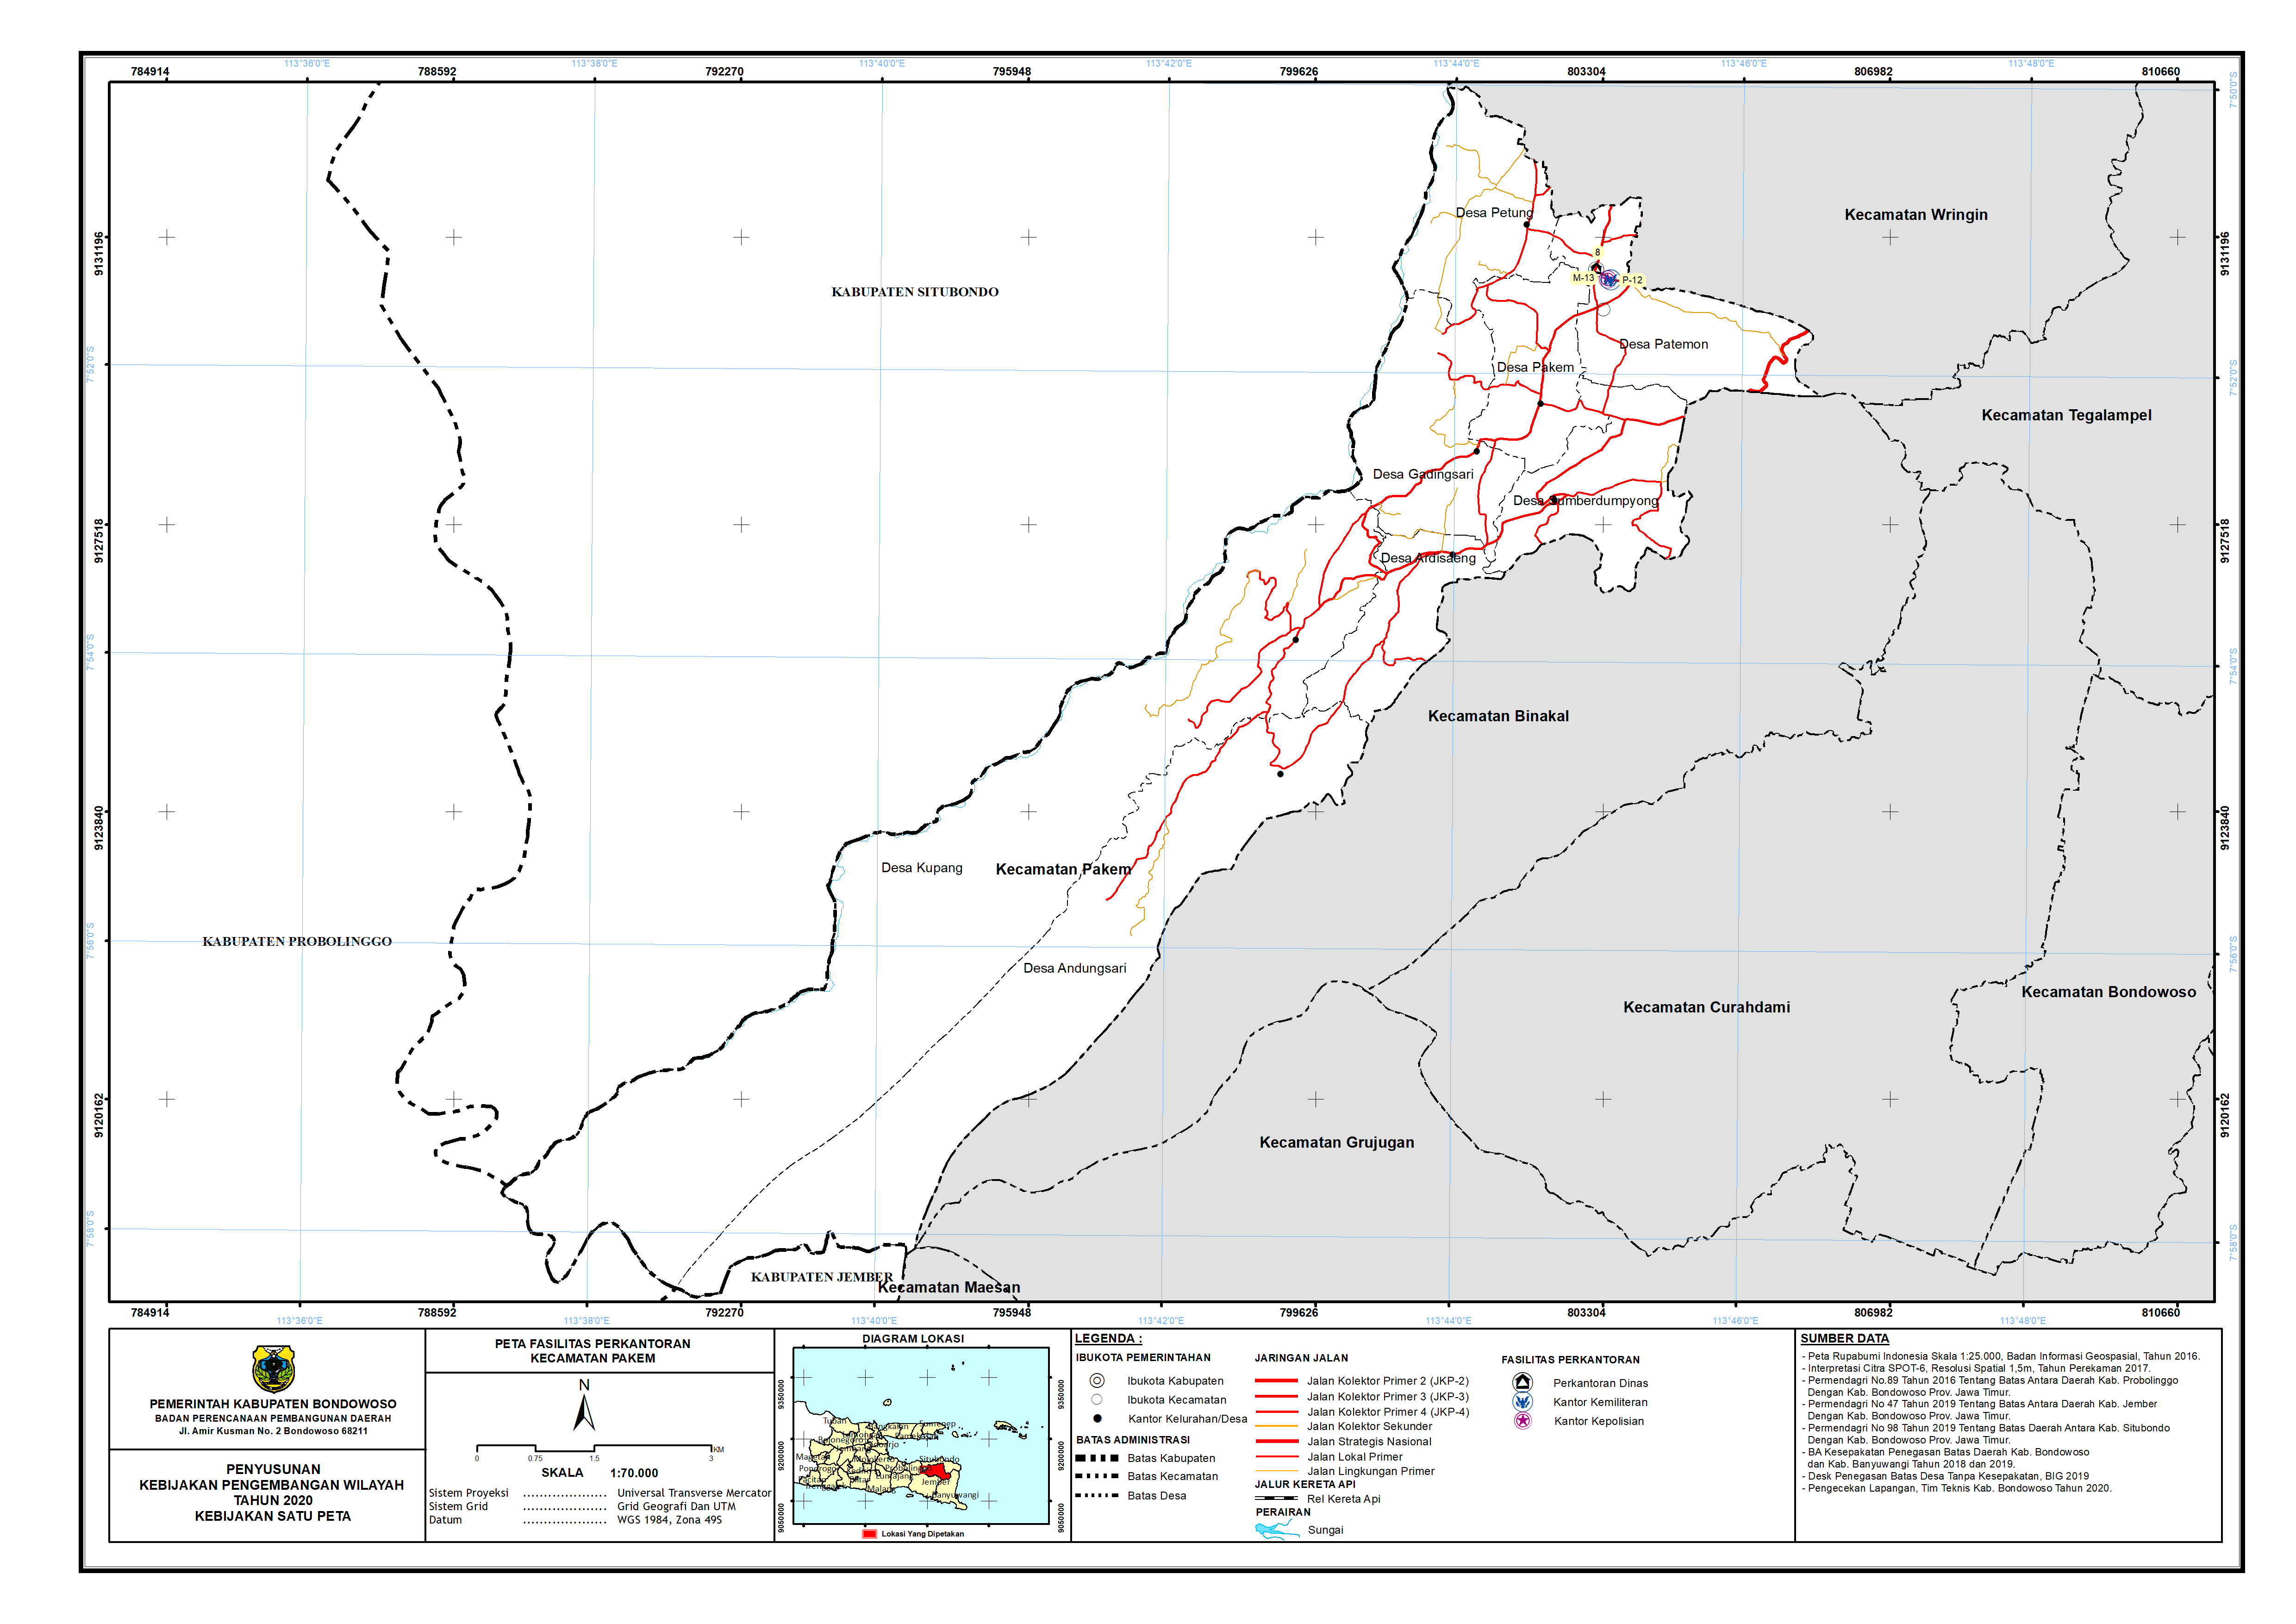 Peta Persebaran Perkantoran Kecamatan Pakem.png